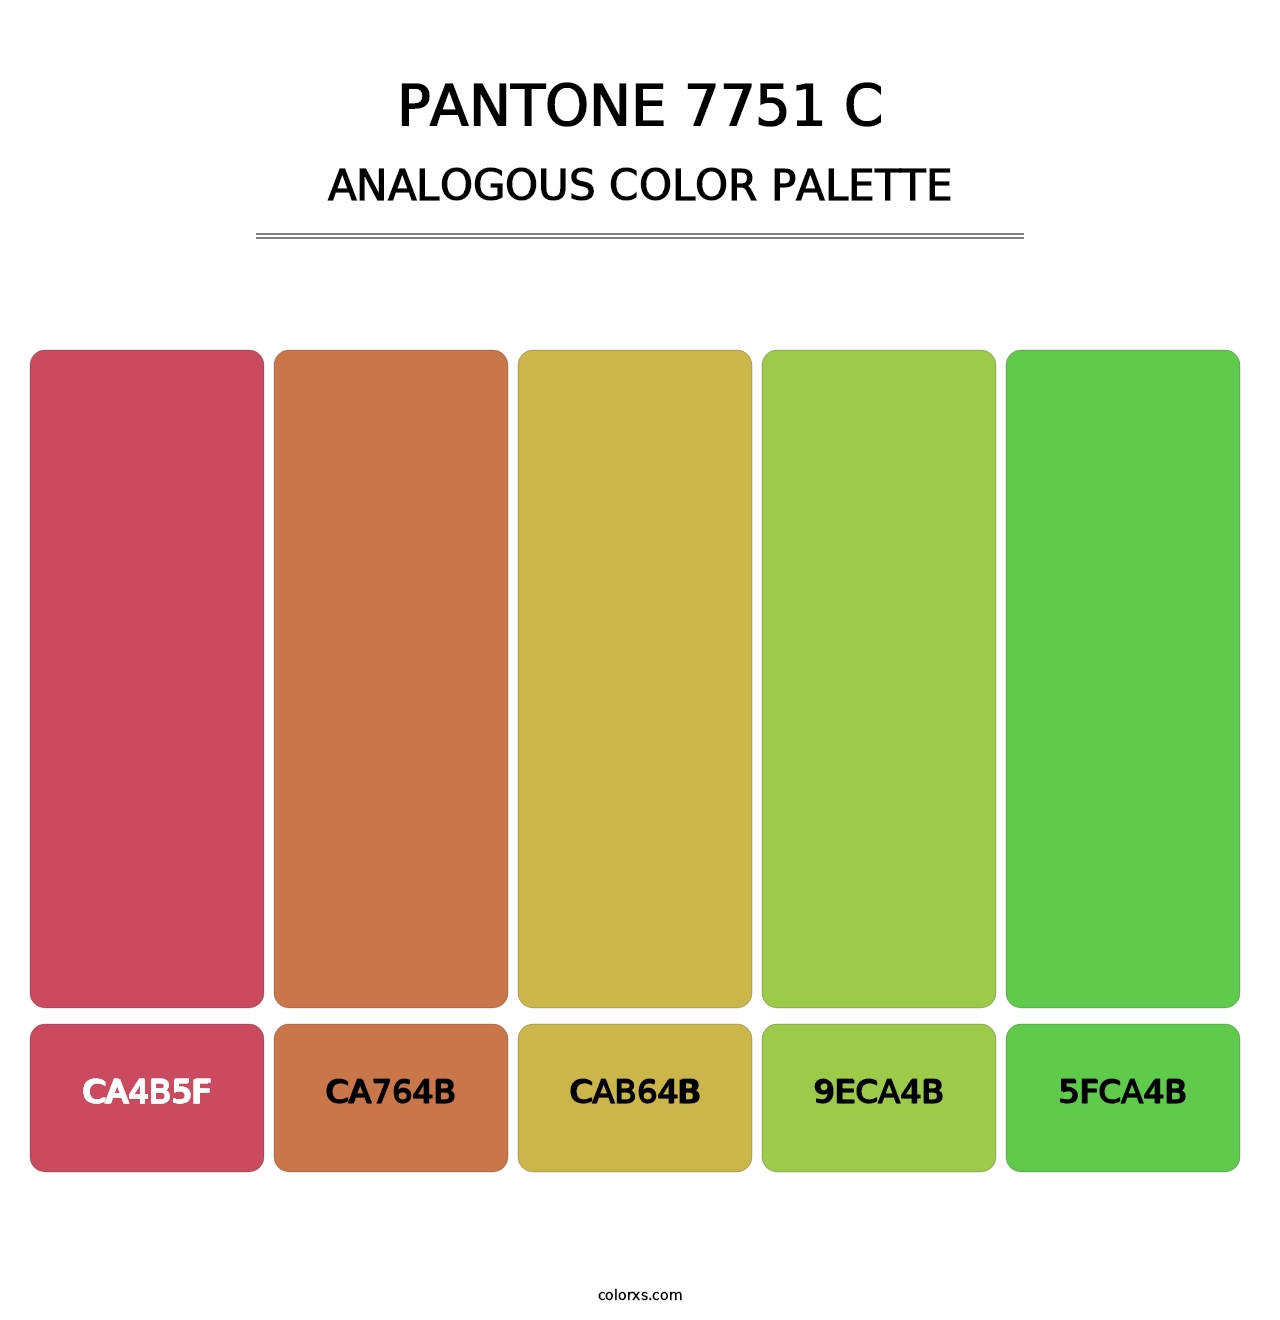 PANTONE 7751 C - Analogous Color Palette